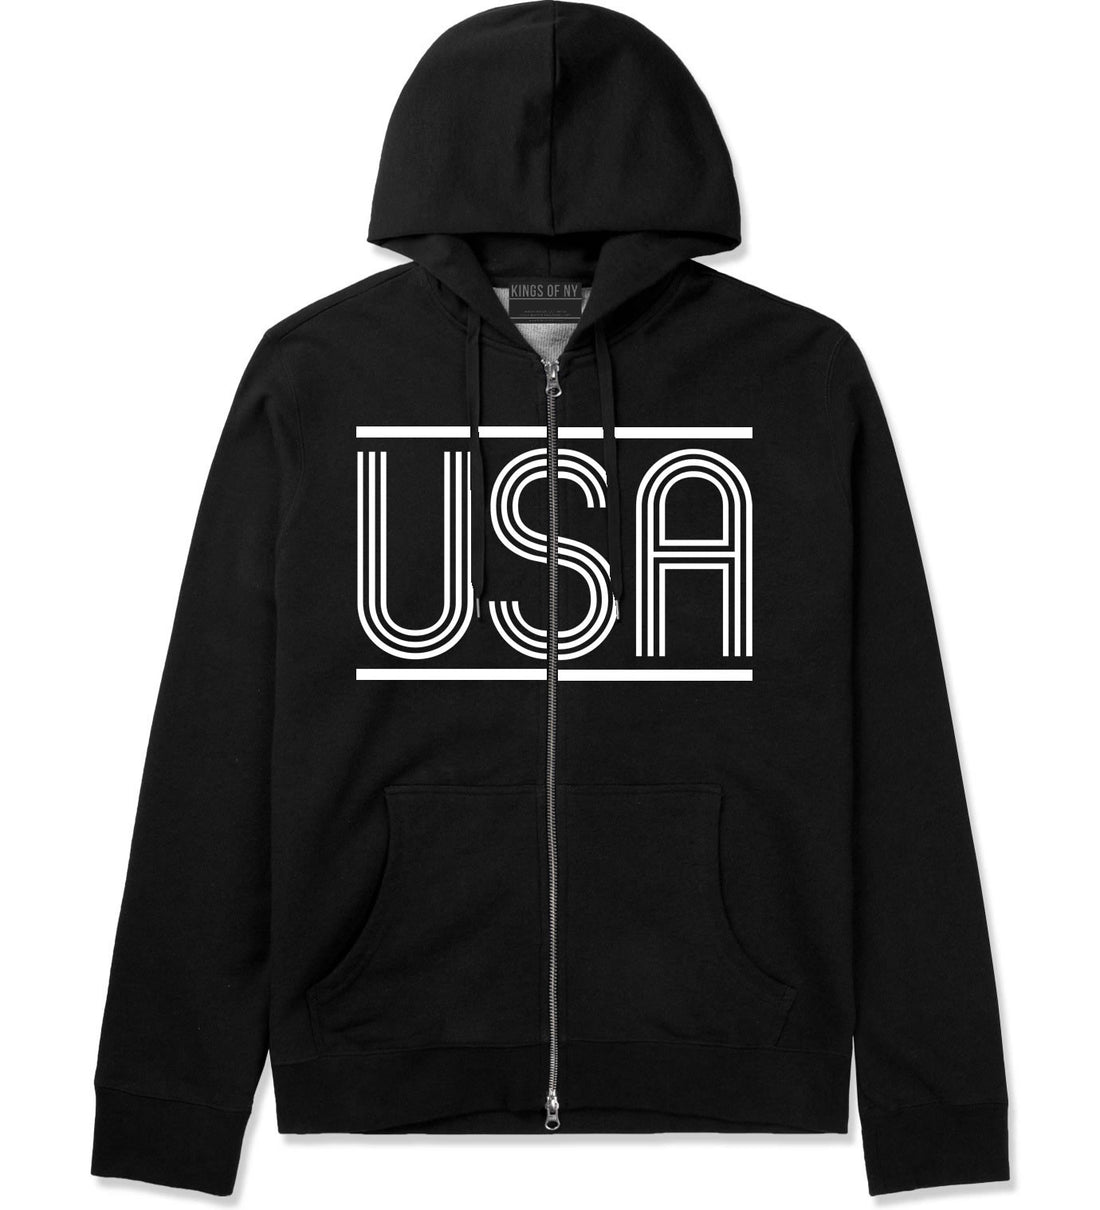 USA America Fall15 Zip Up Hoodie Hoody in Black by Kings Of NY